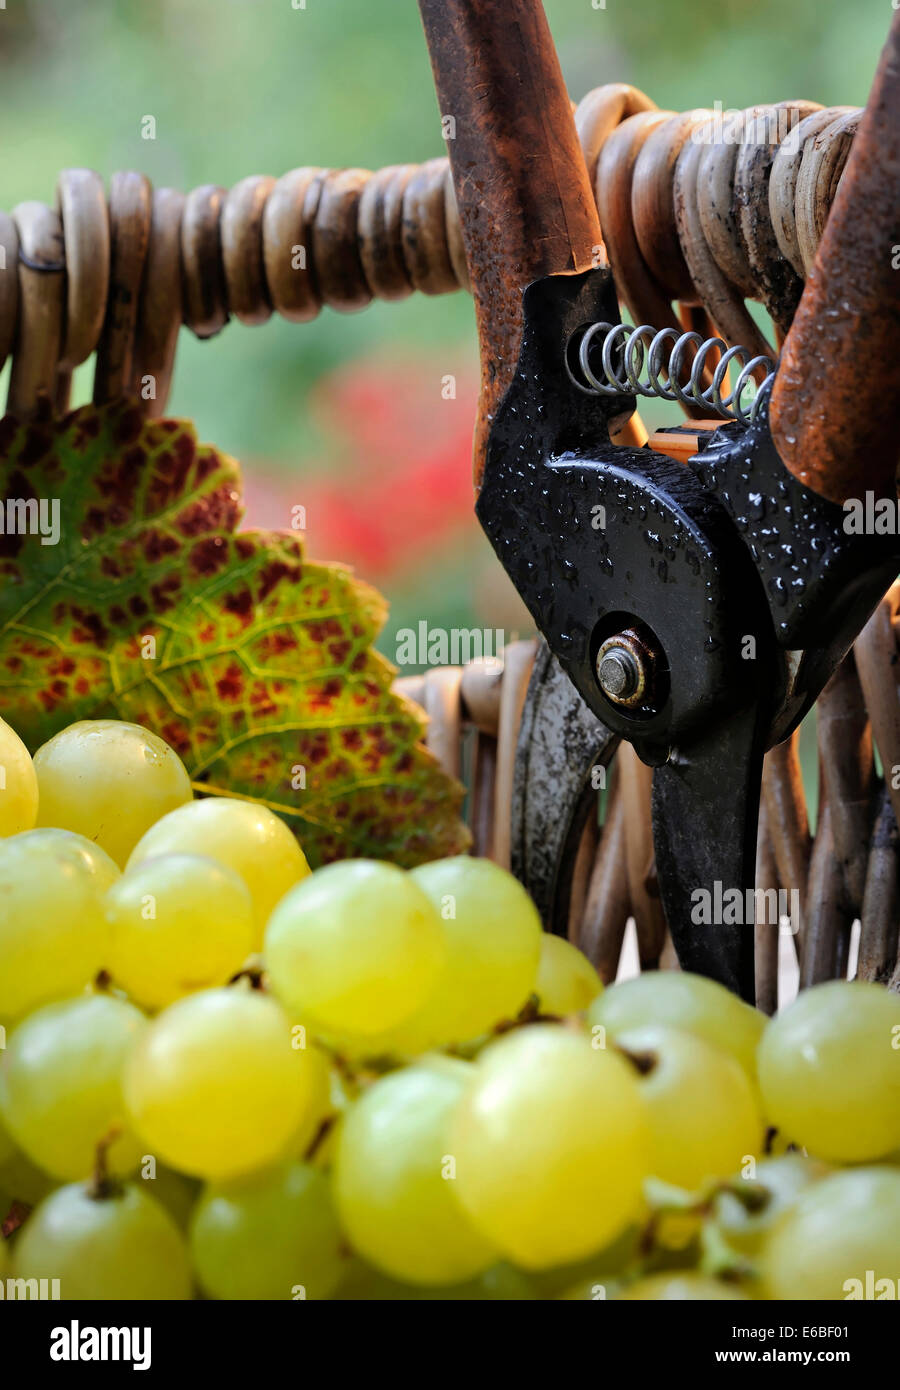 Weinlese-Konzept mit weißen Trauben und Weinberg Blatt im traditionellen französischen Trauben Picker Weidenkorb und Gartenschere Stockfoto